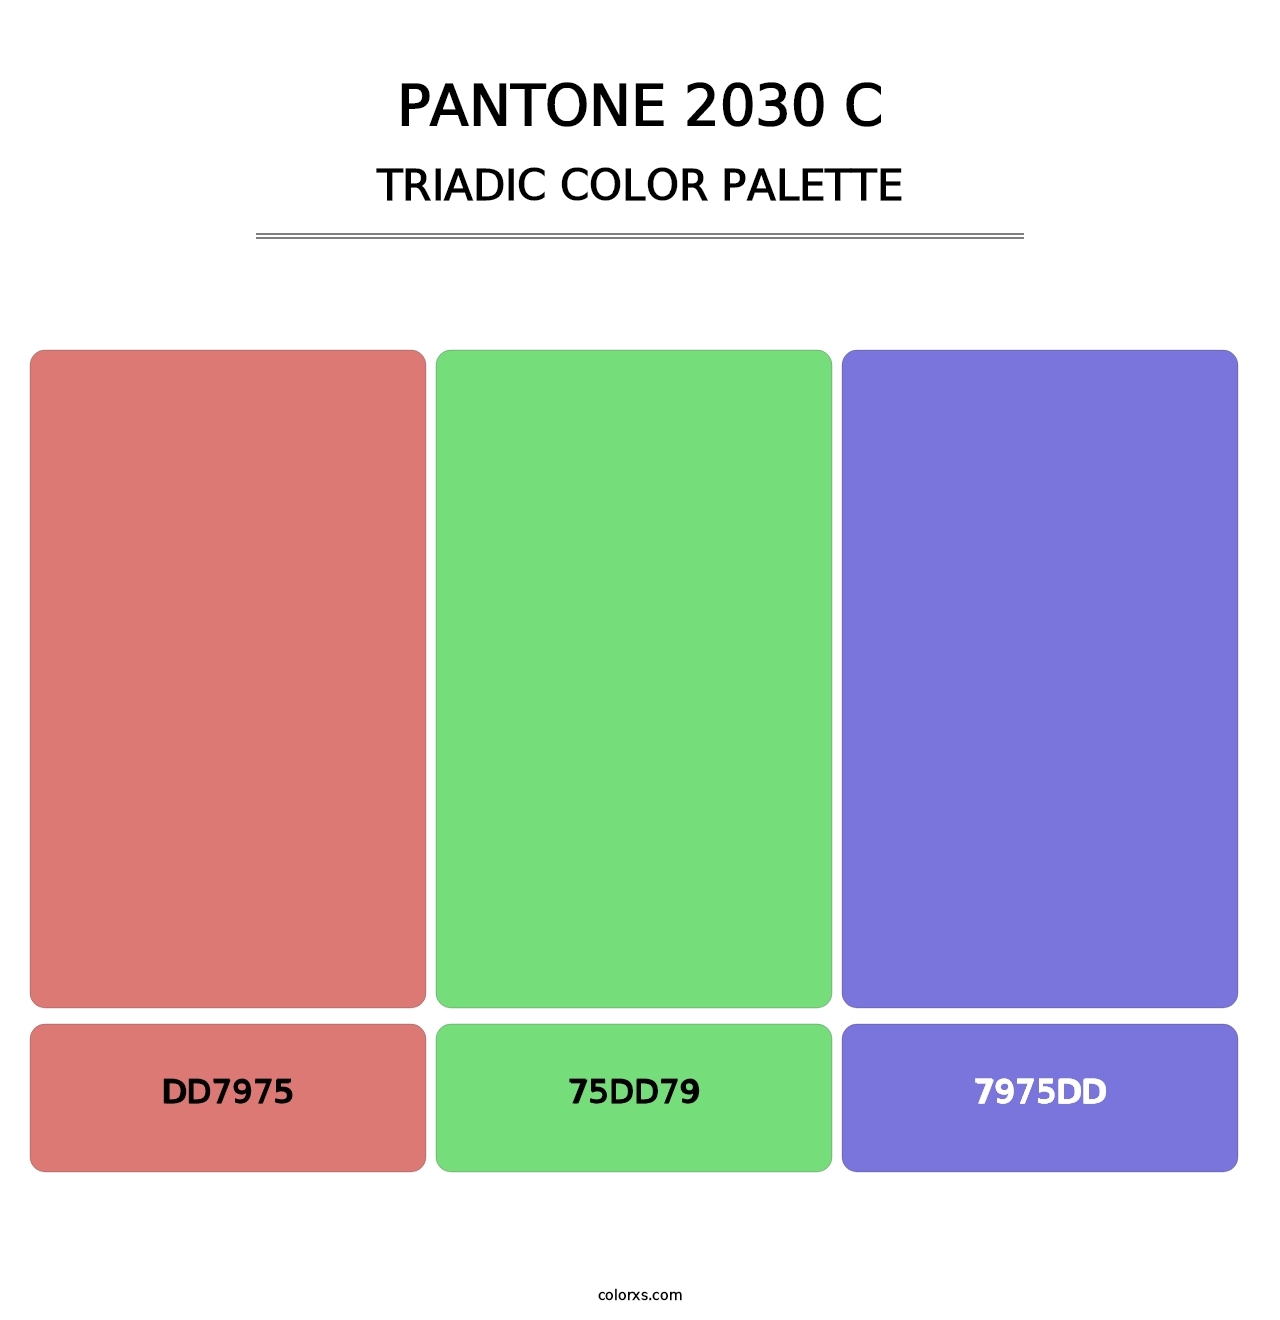 PANTONE 2030 C - Triadic Color Palette